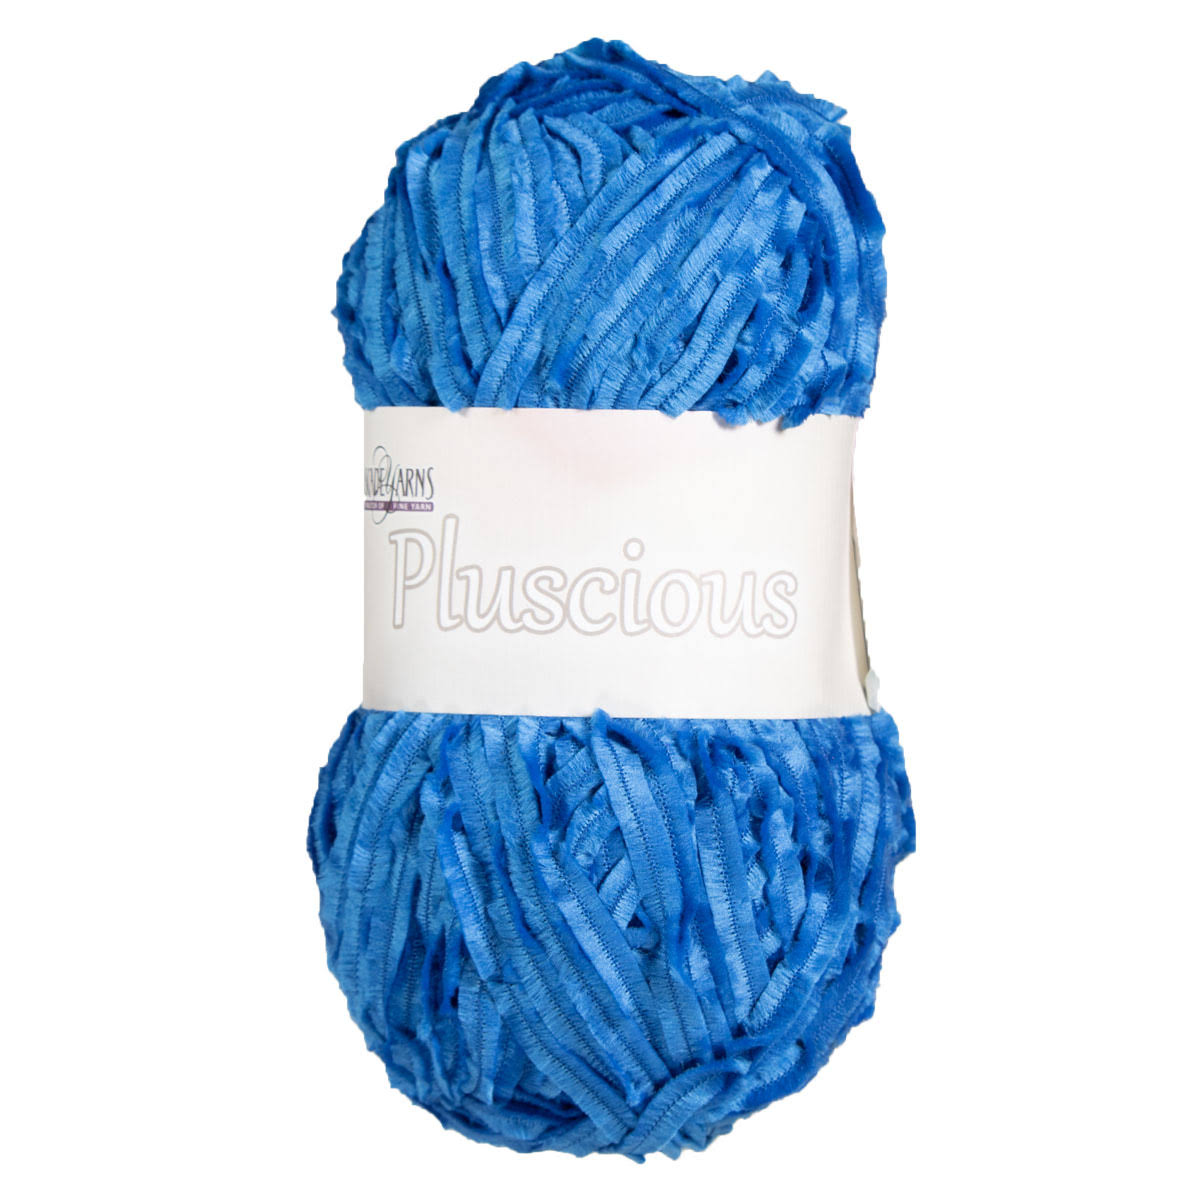 Cascade Pluscious Yarn - 25 Bluejay